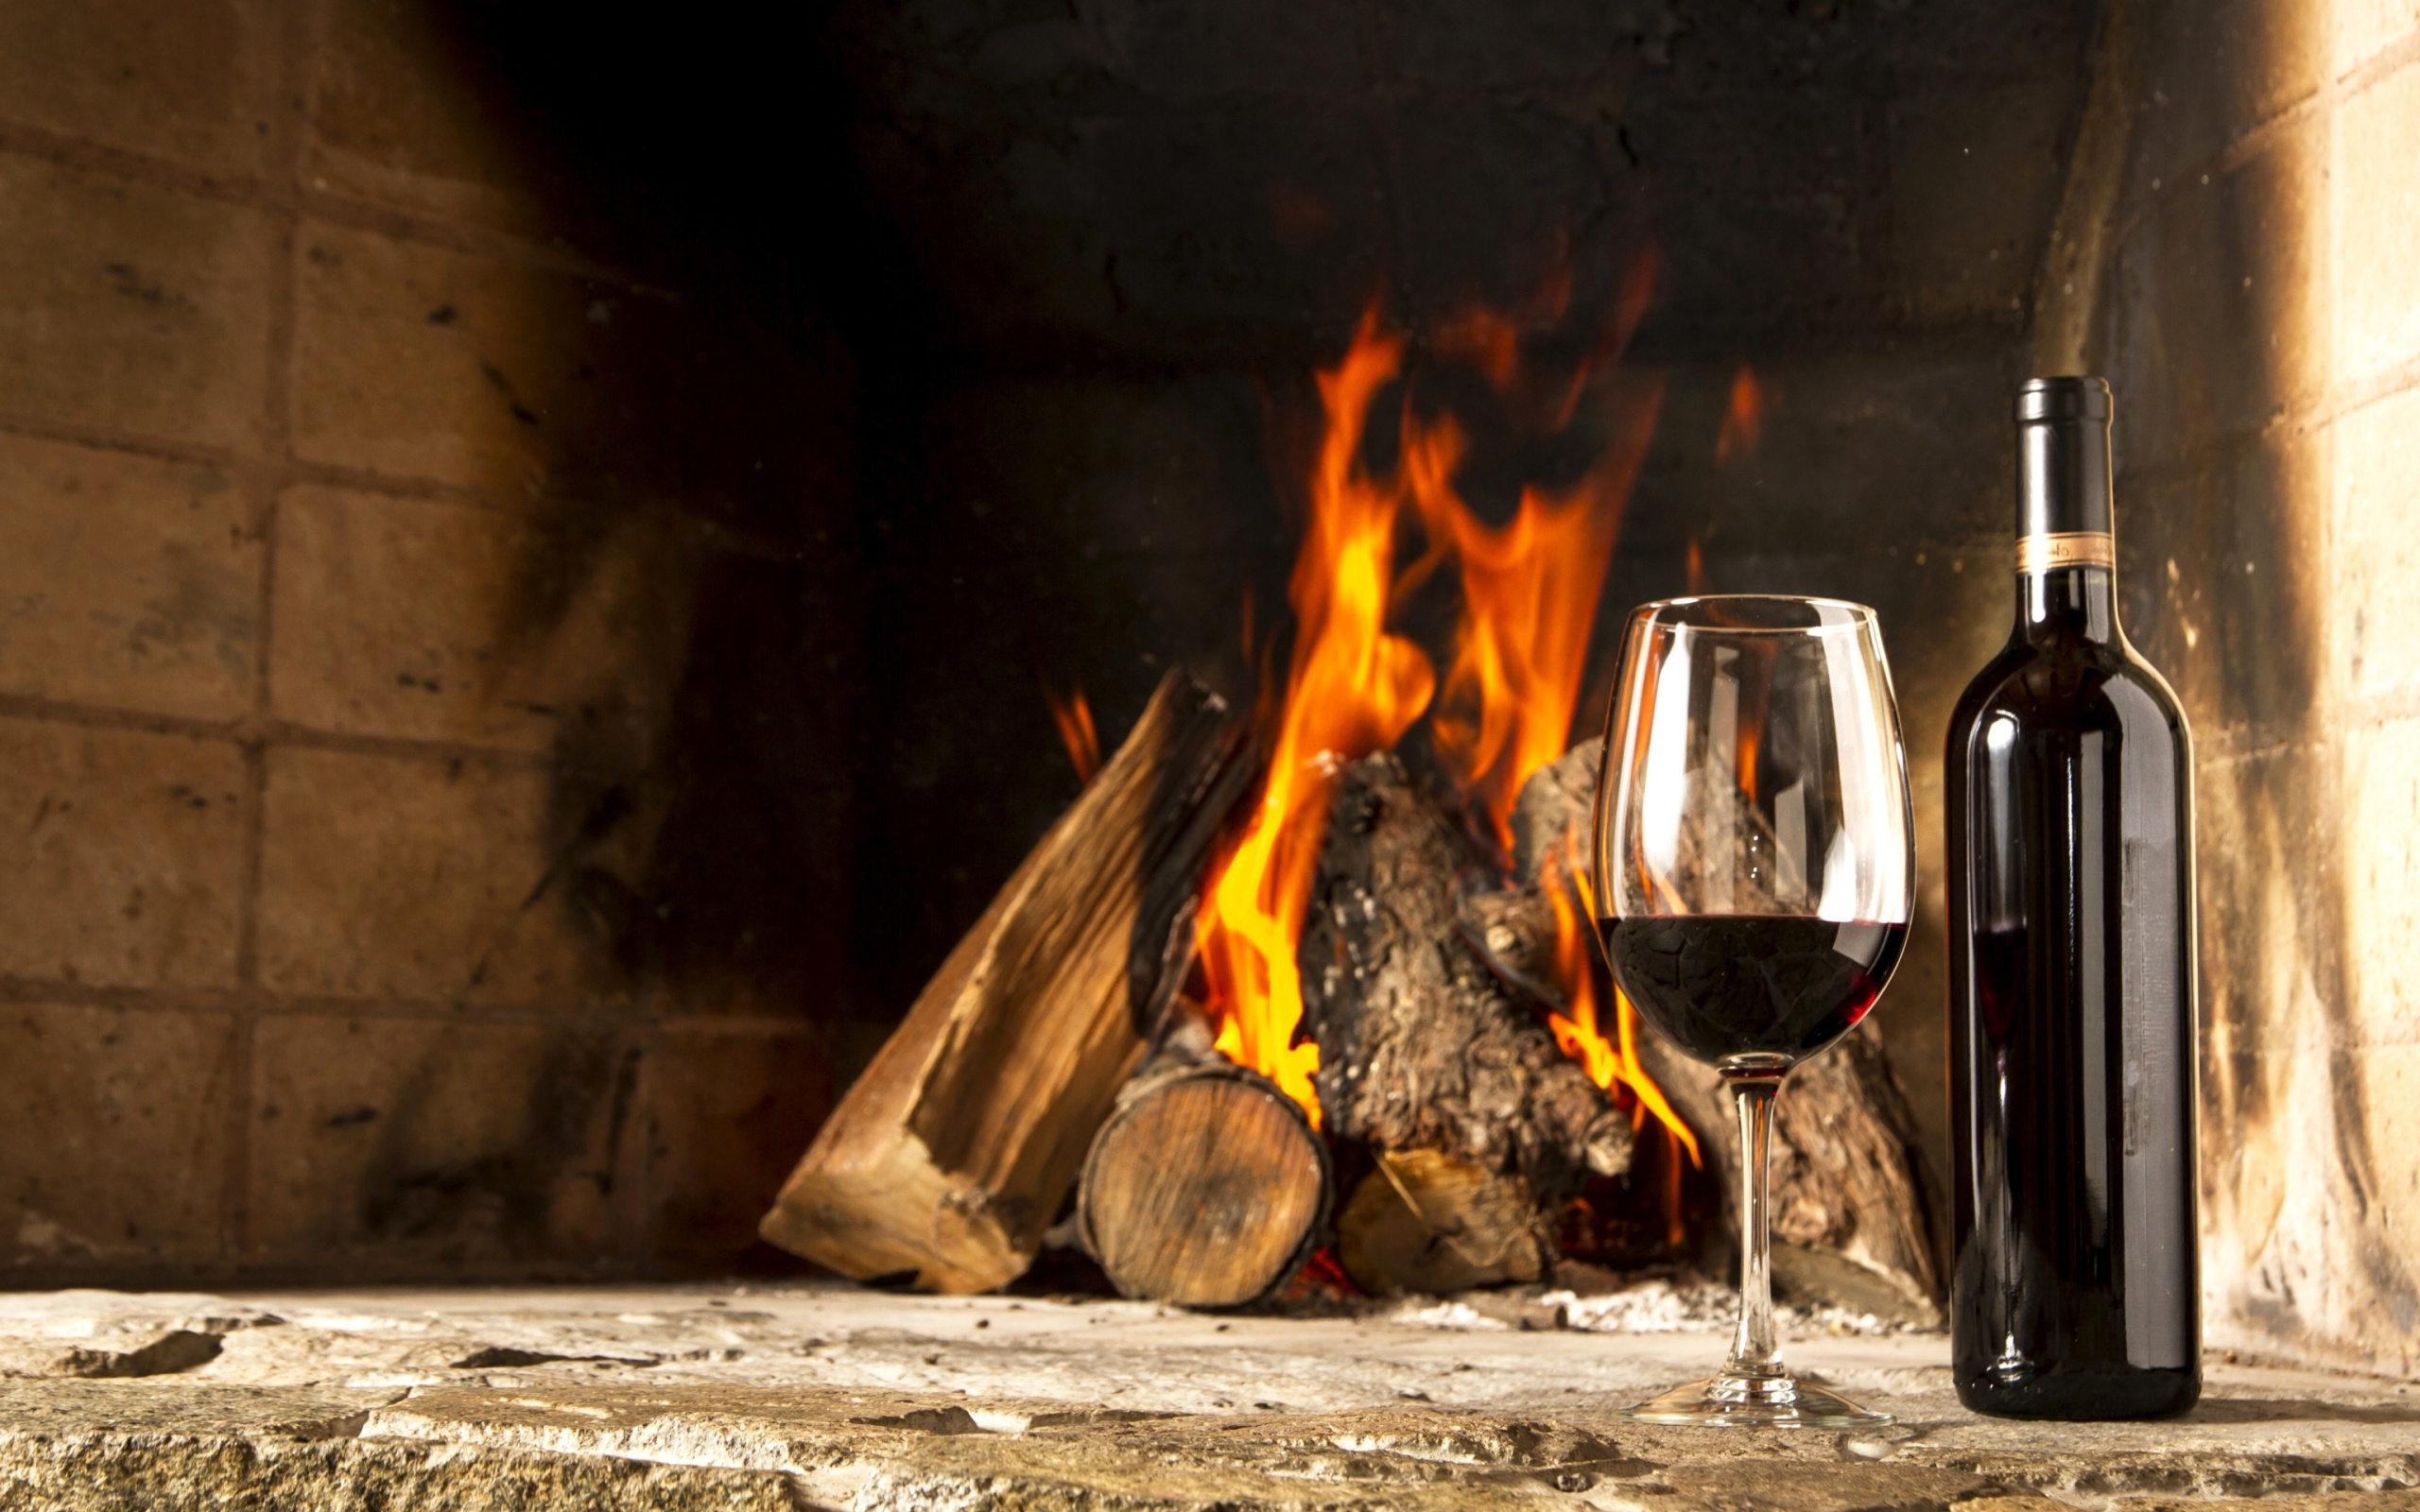 Обои Wine and fireplace 2560x1600